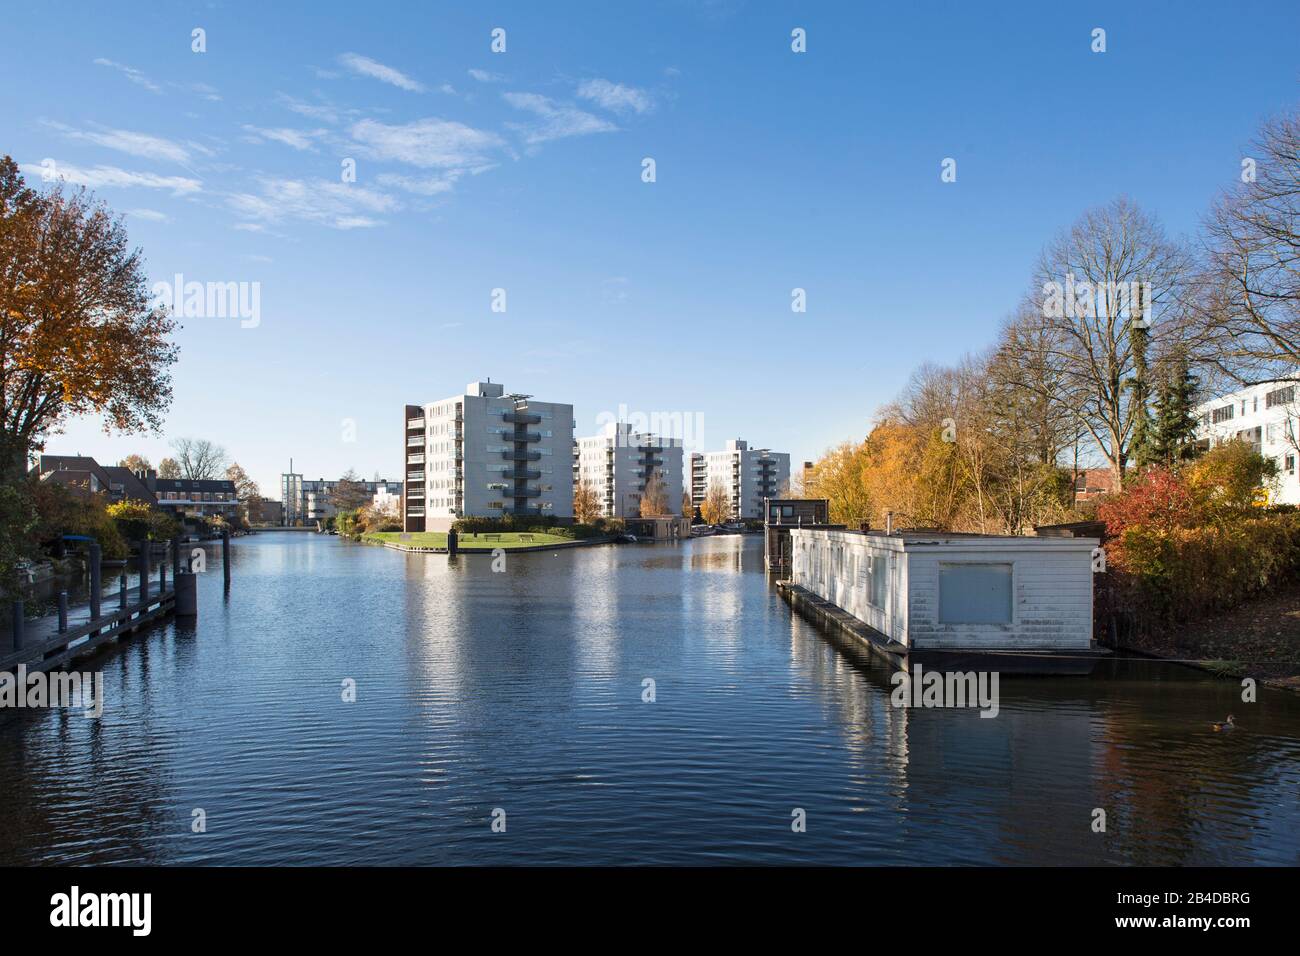 Europa, Niederlande, Groningen: Blick auf Hausboote und Reihenhäuser am Kanal Stockfoto